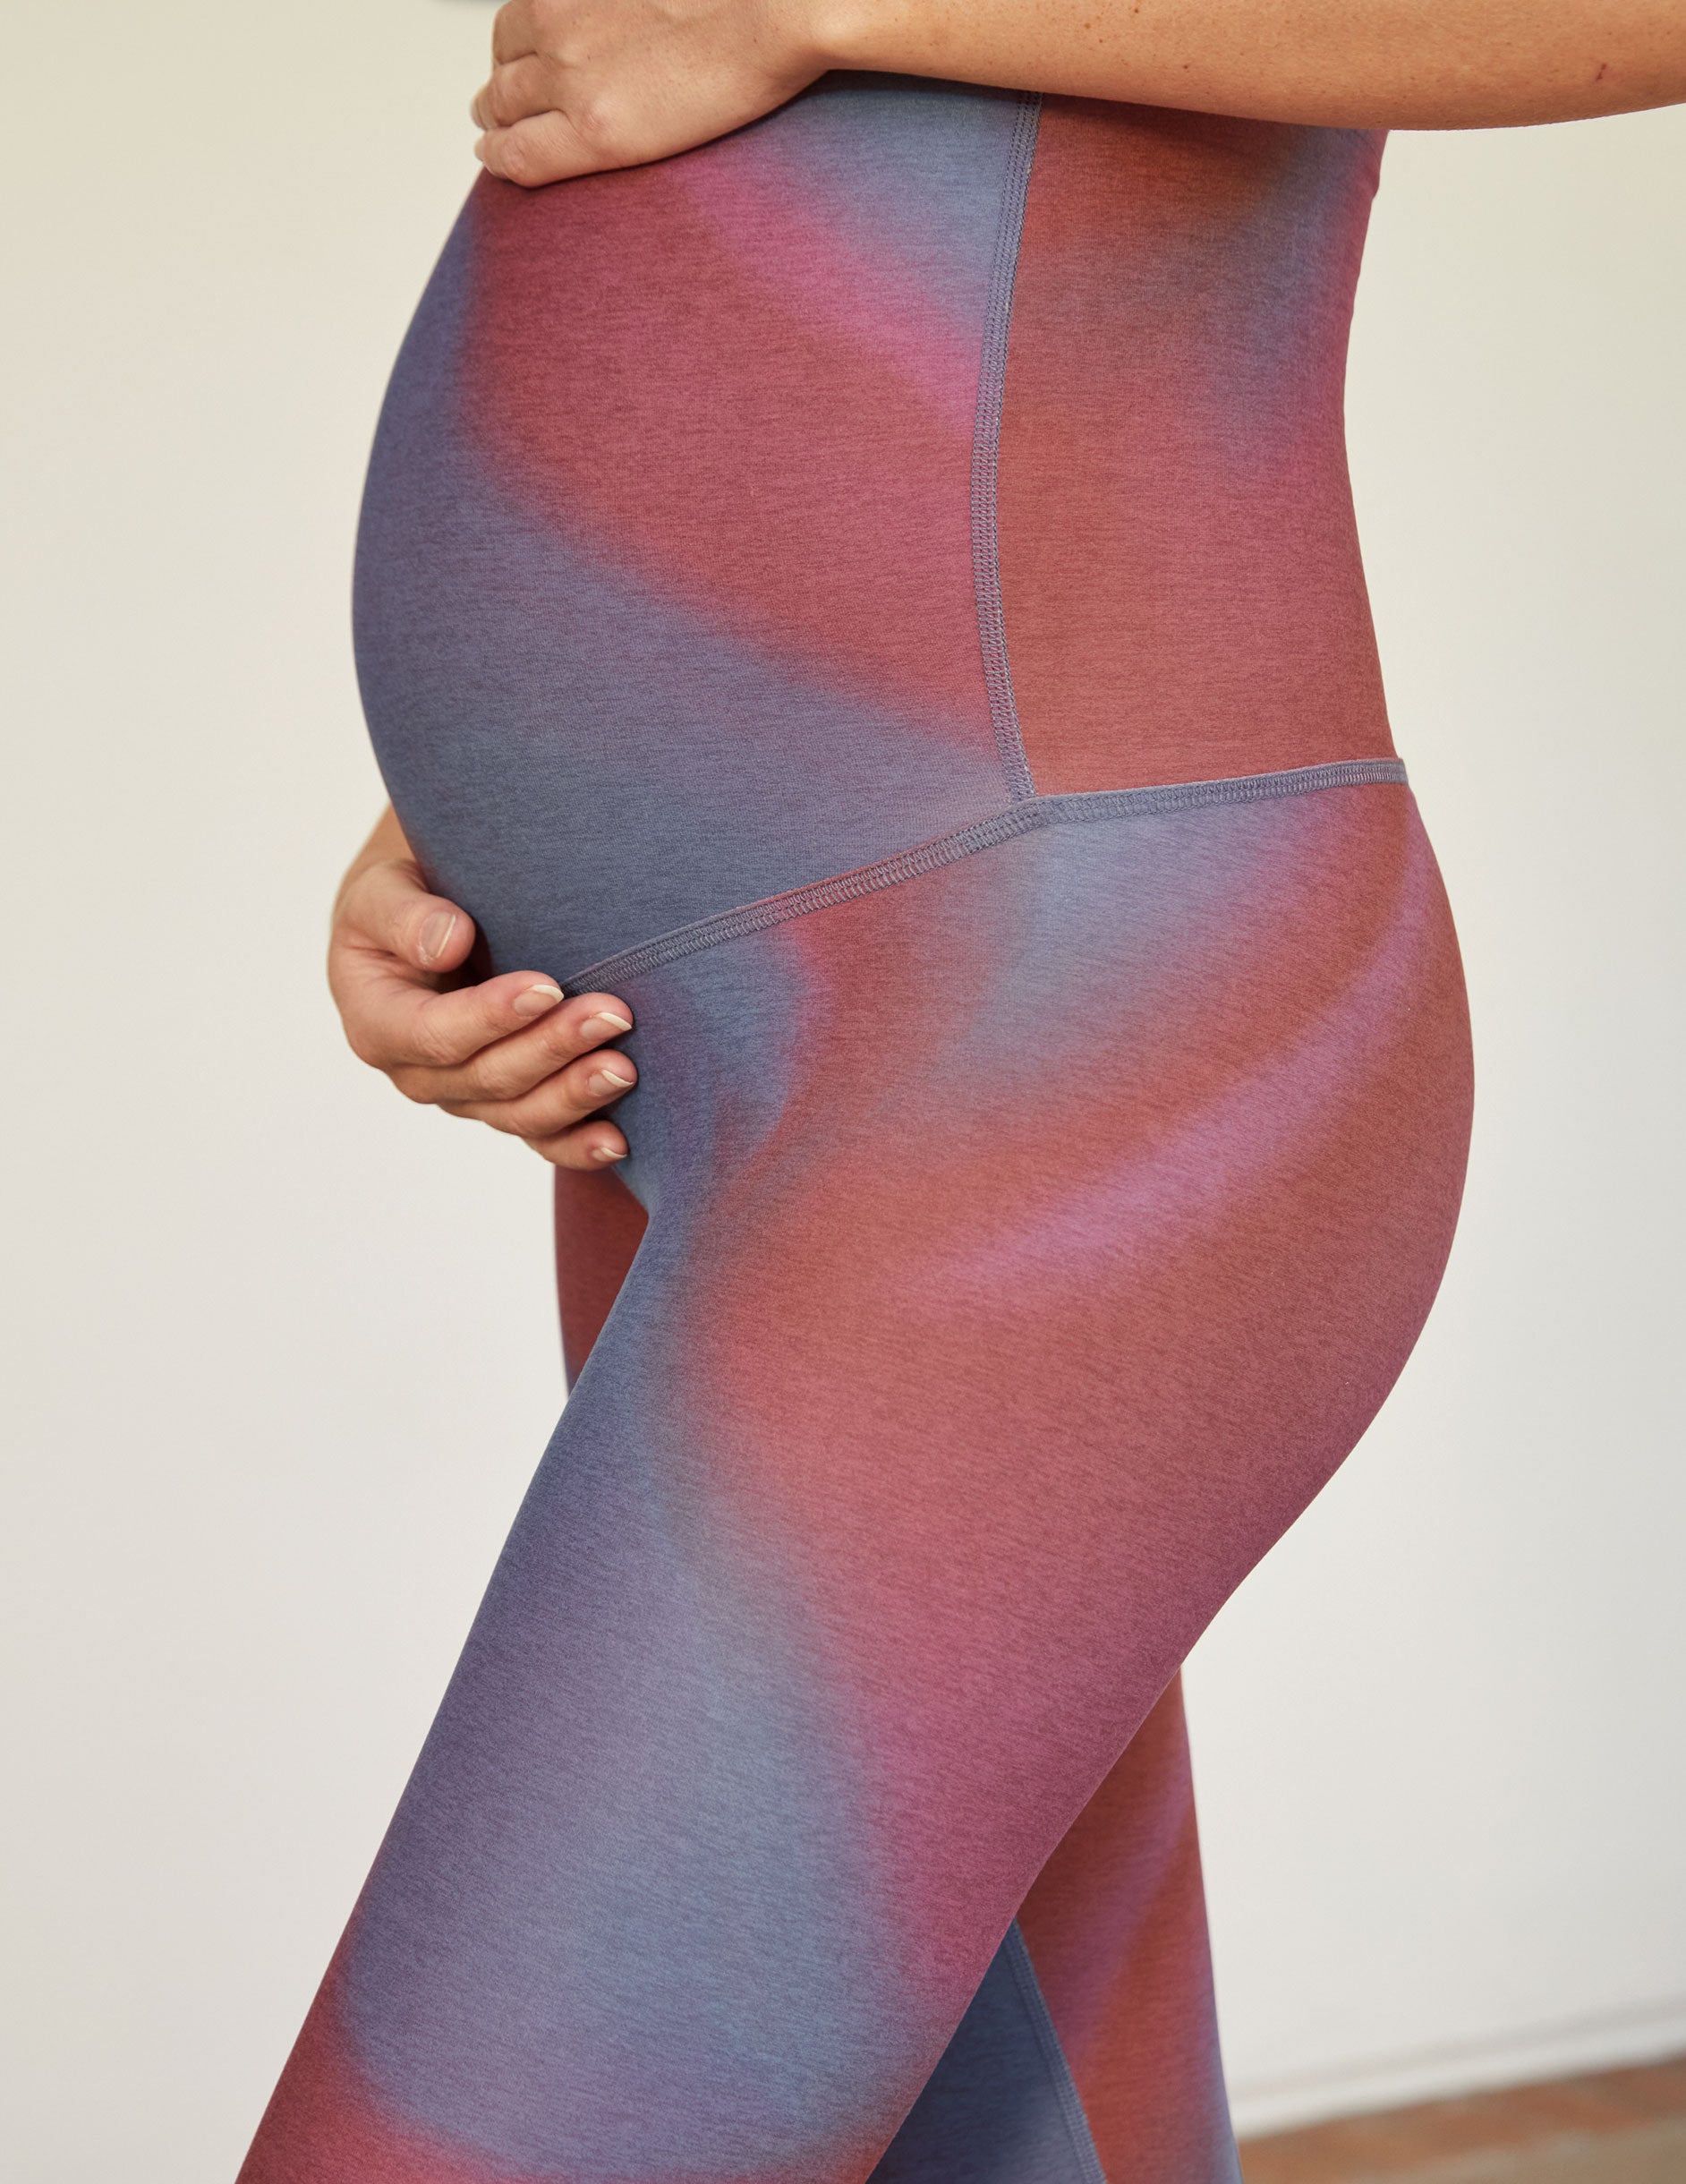 printed maternity legging